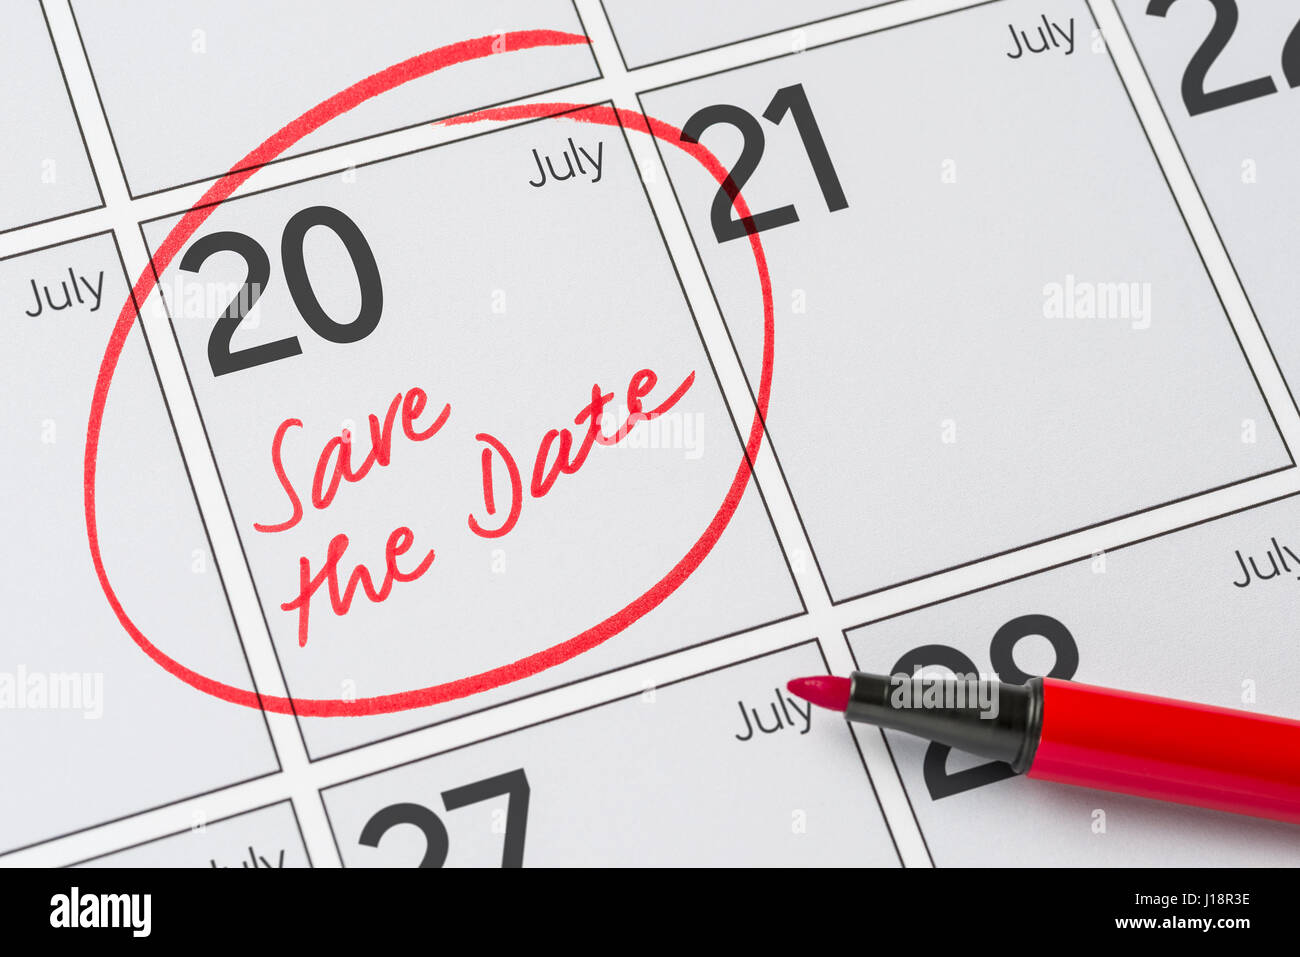 Enregistrer la date inscrite sur un calendrier - Juillet 20 Banque D'Images